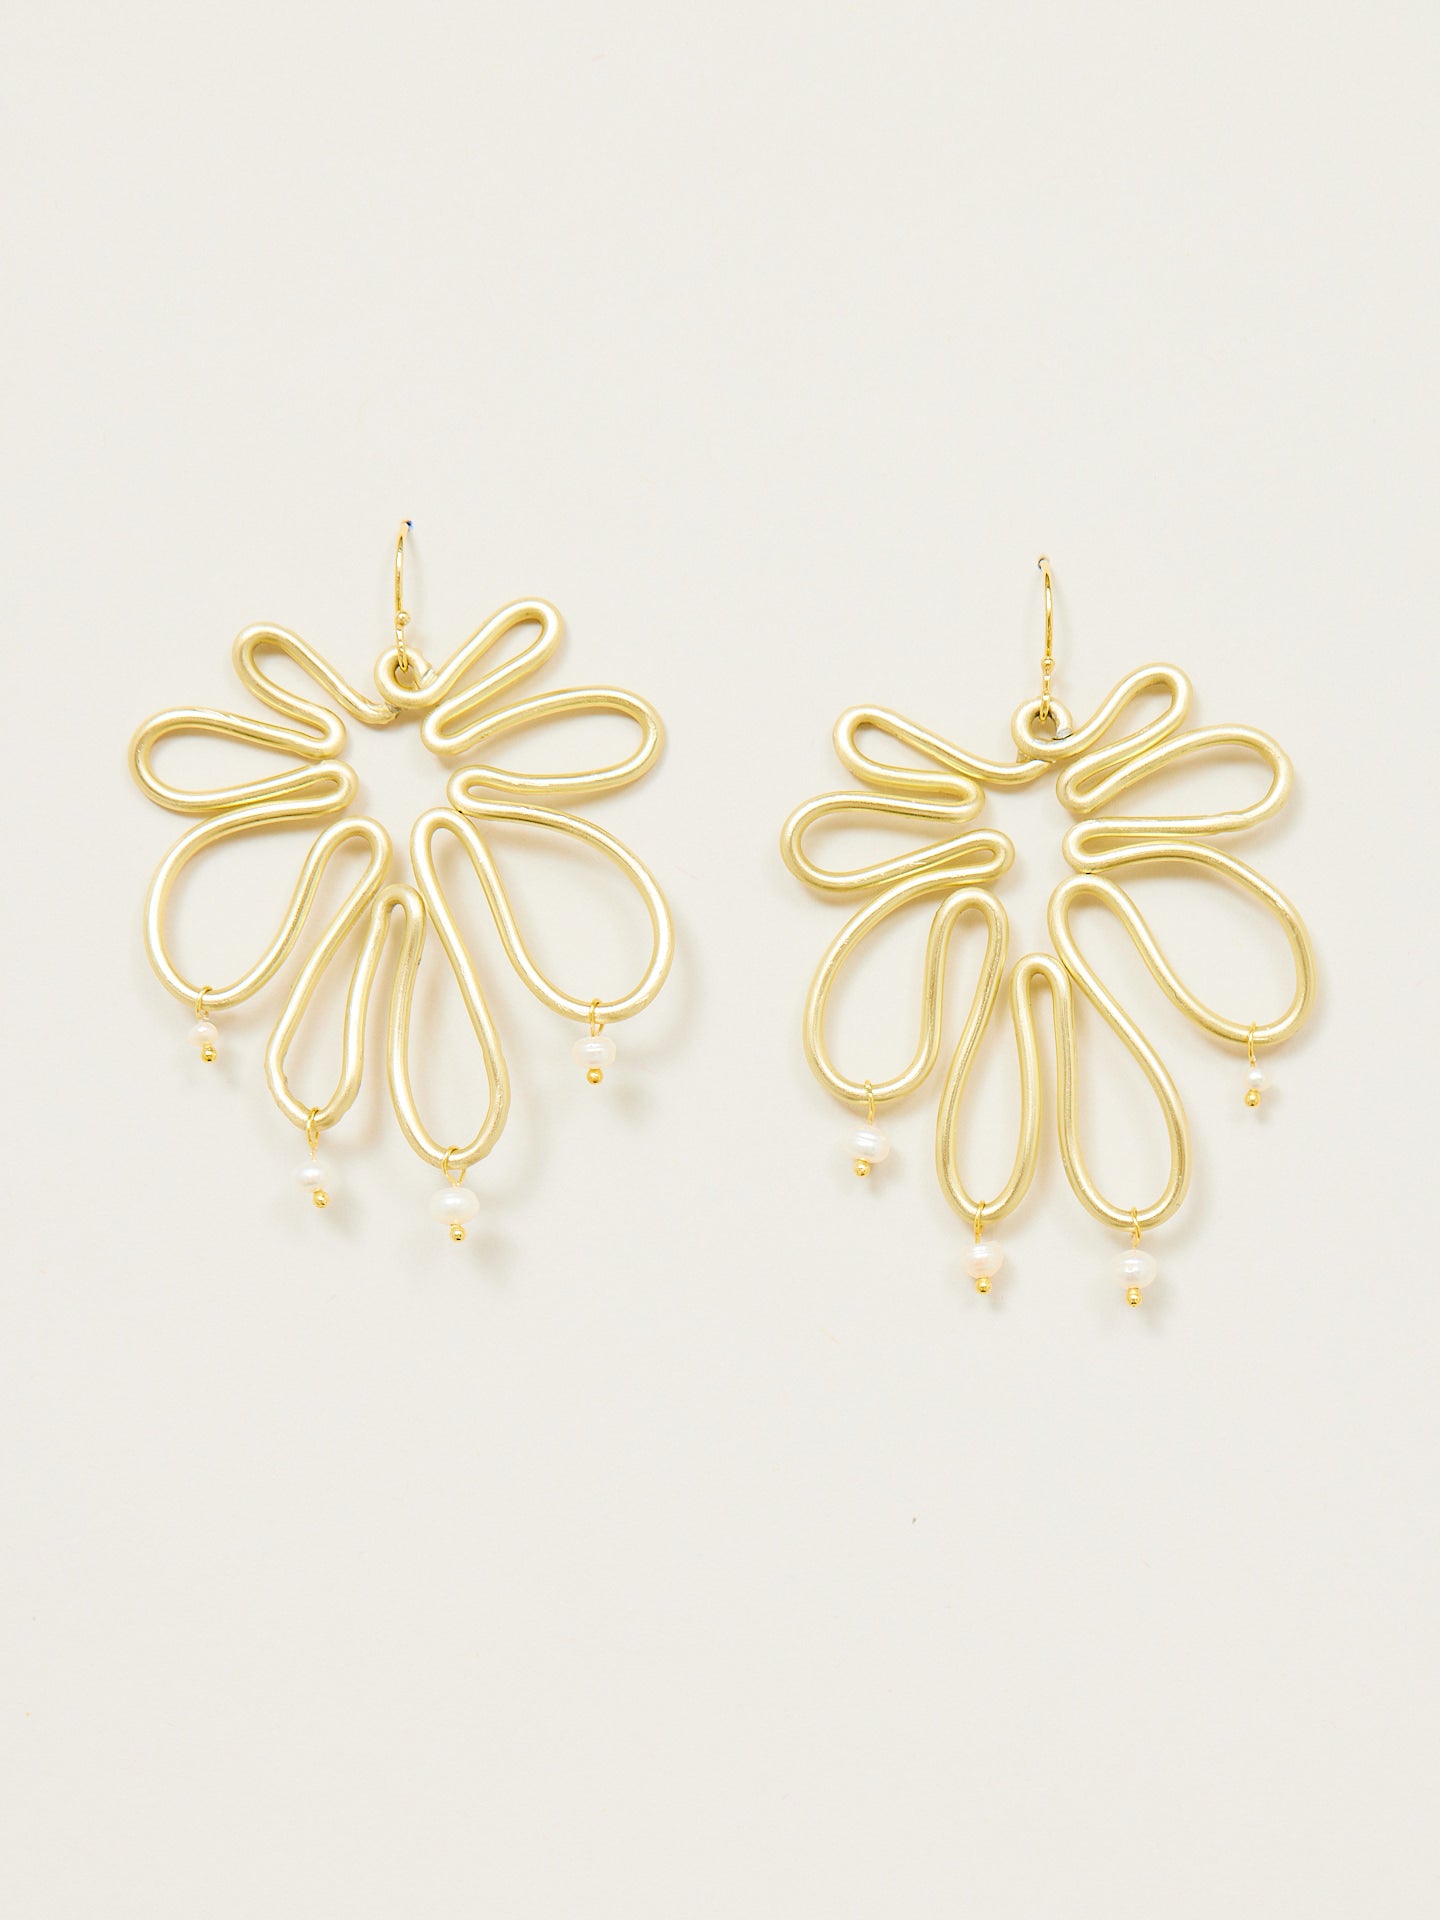 Tolle, aufwendige, goldene Ohrringe, die aussehen wie eine Blüte aus Gold.